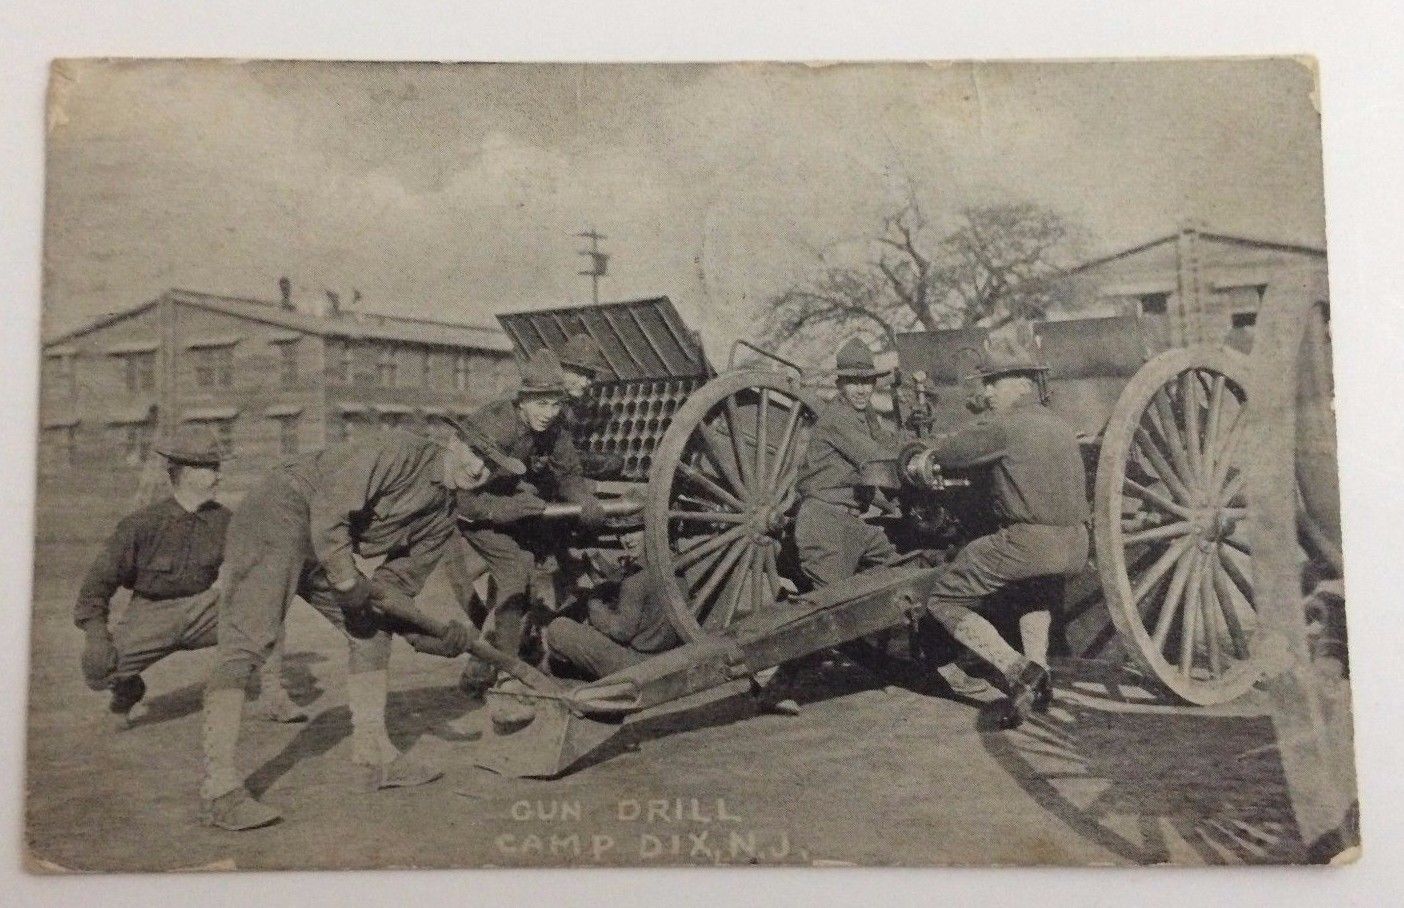 Camp Dix - Burlington County - Artillery drill - c 1917-18